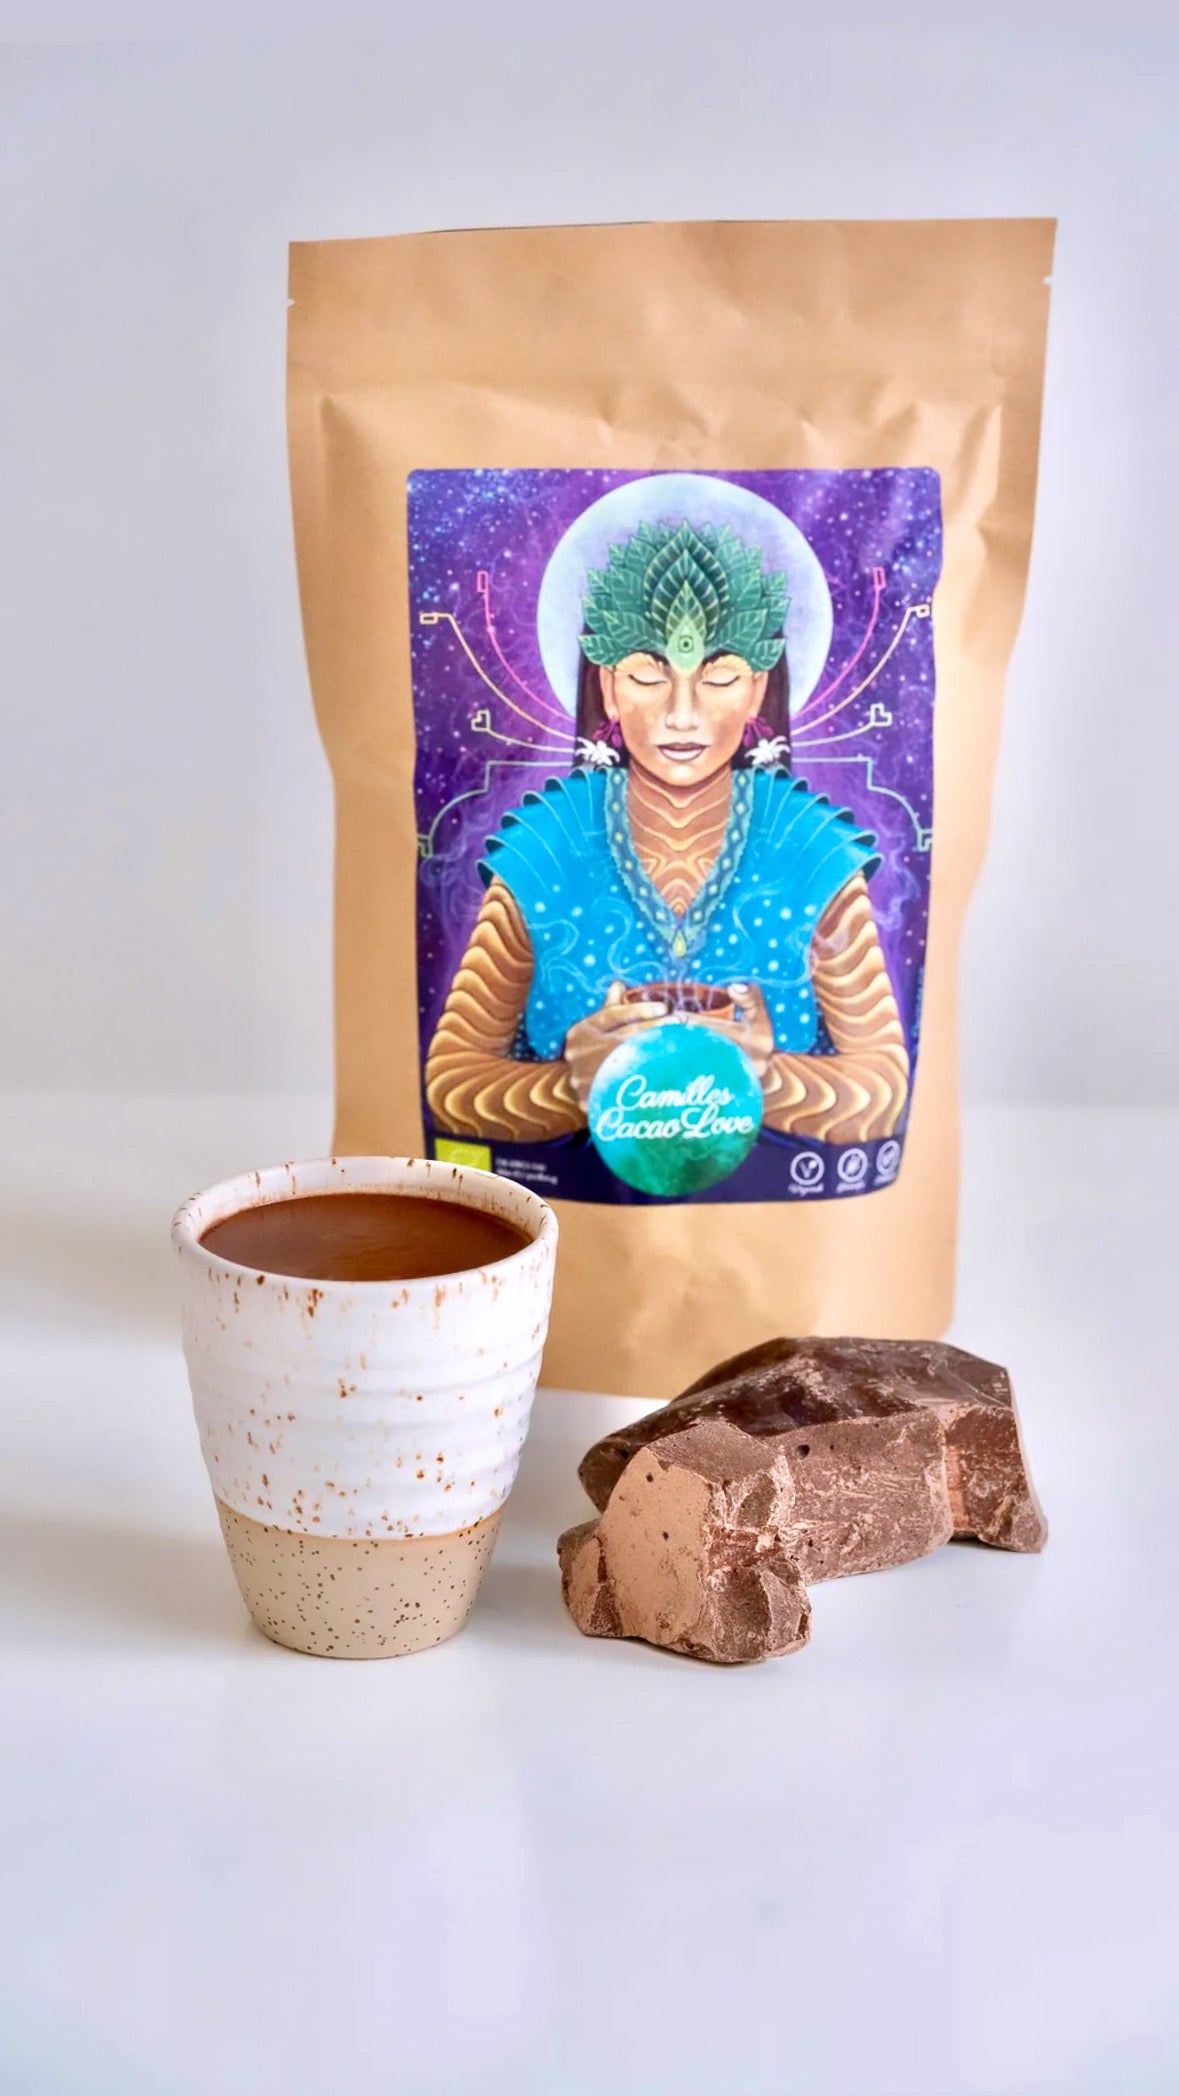 Camilles Cacao Love - 25g ☽ Camilles fantastiske “soul medicine” i form af ren økologisk ceremoniel cacao ☽